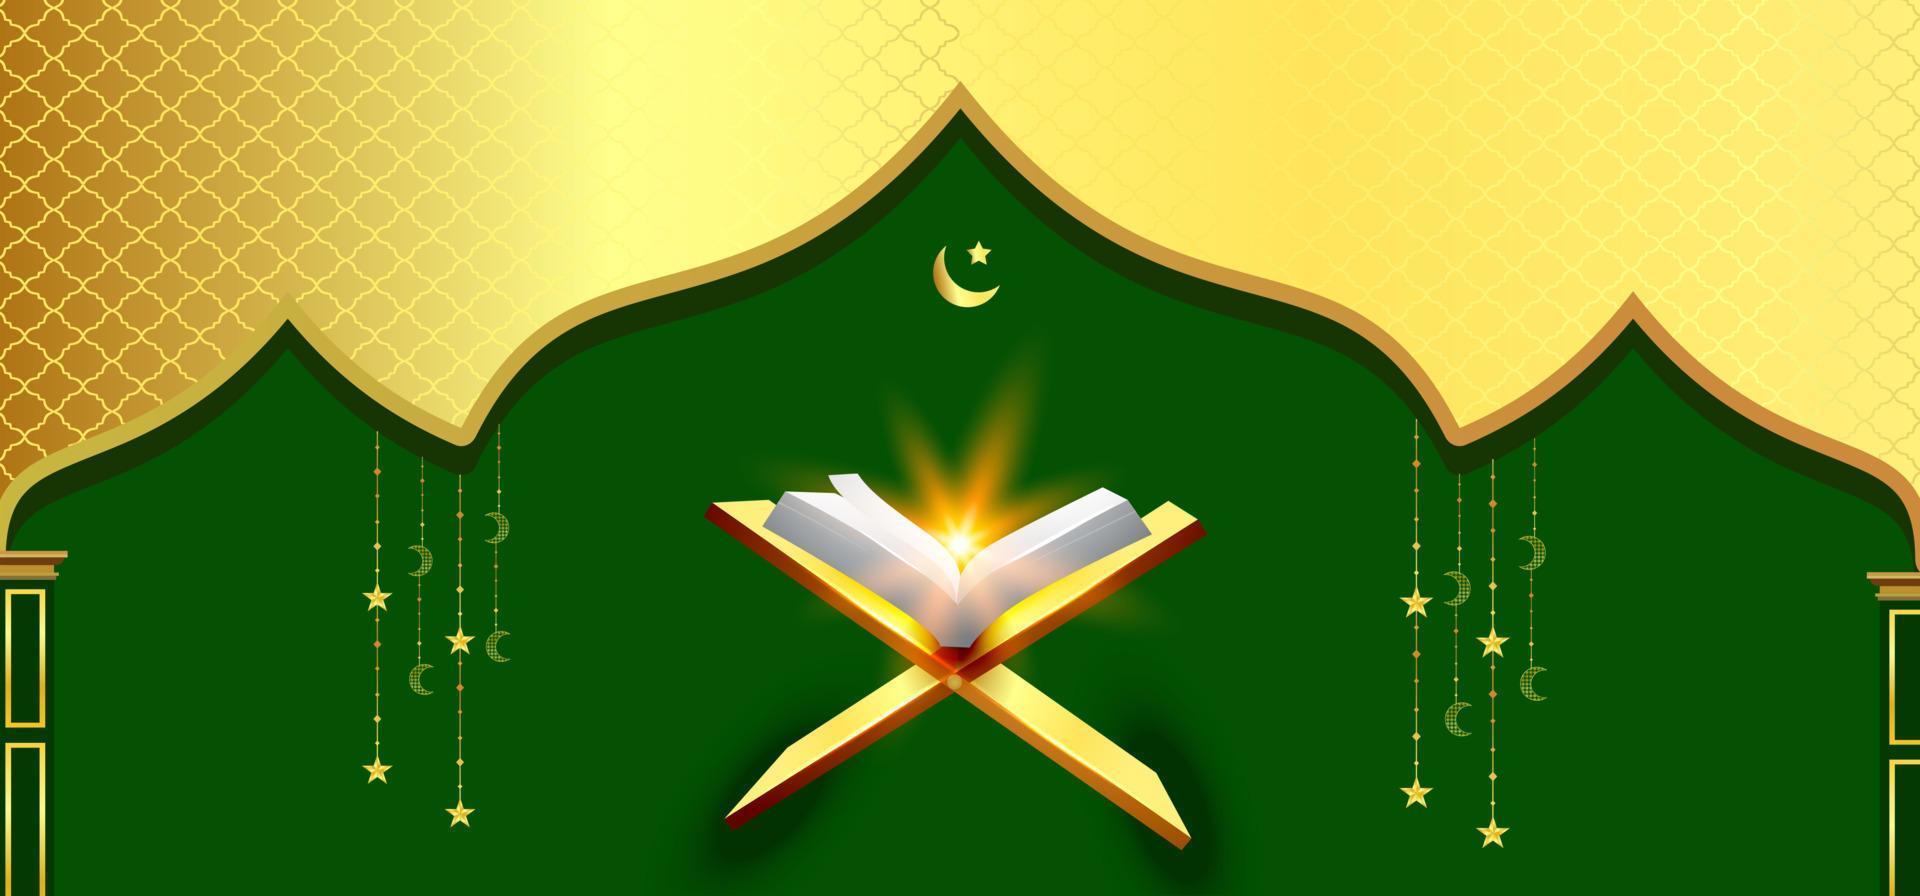 Sự kết hợp giữa màu xanh lá cây nổi bật và Quran tuyệt vời sẽ khiến tấm hình trở nên rất nổi bật. Hãy xem hình liên quan đến \